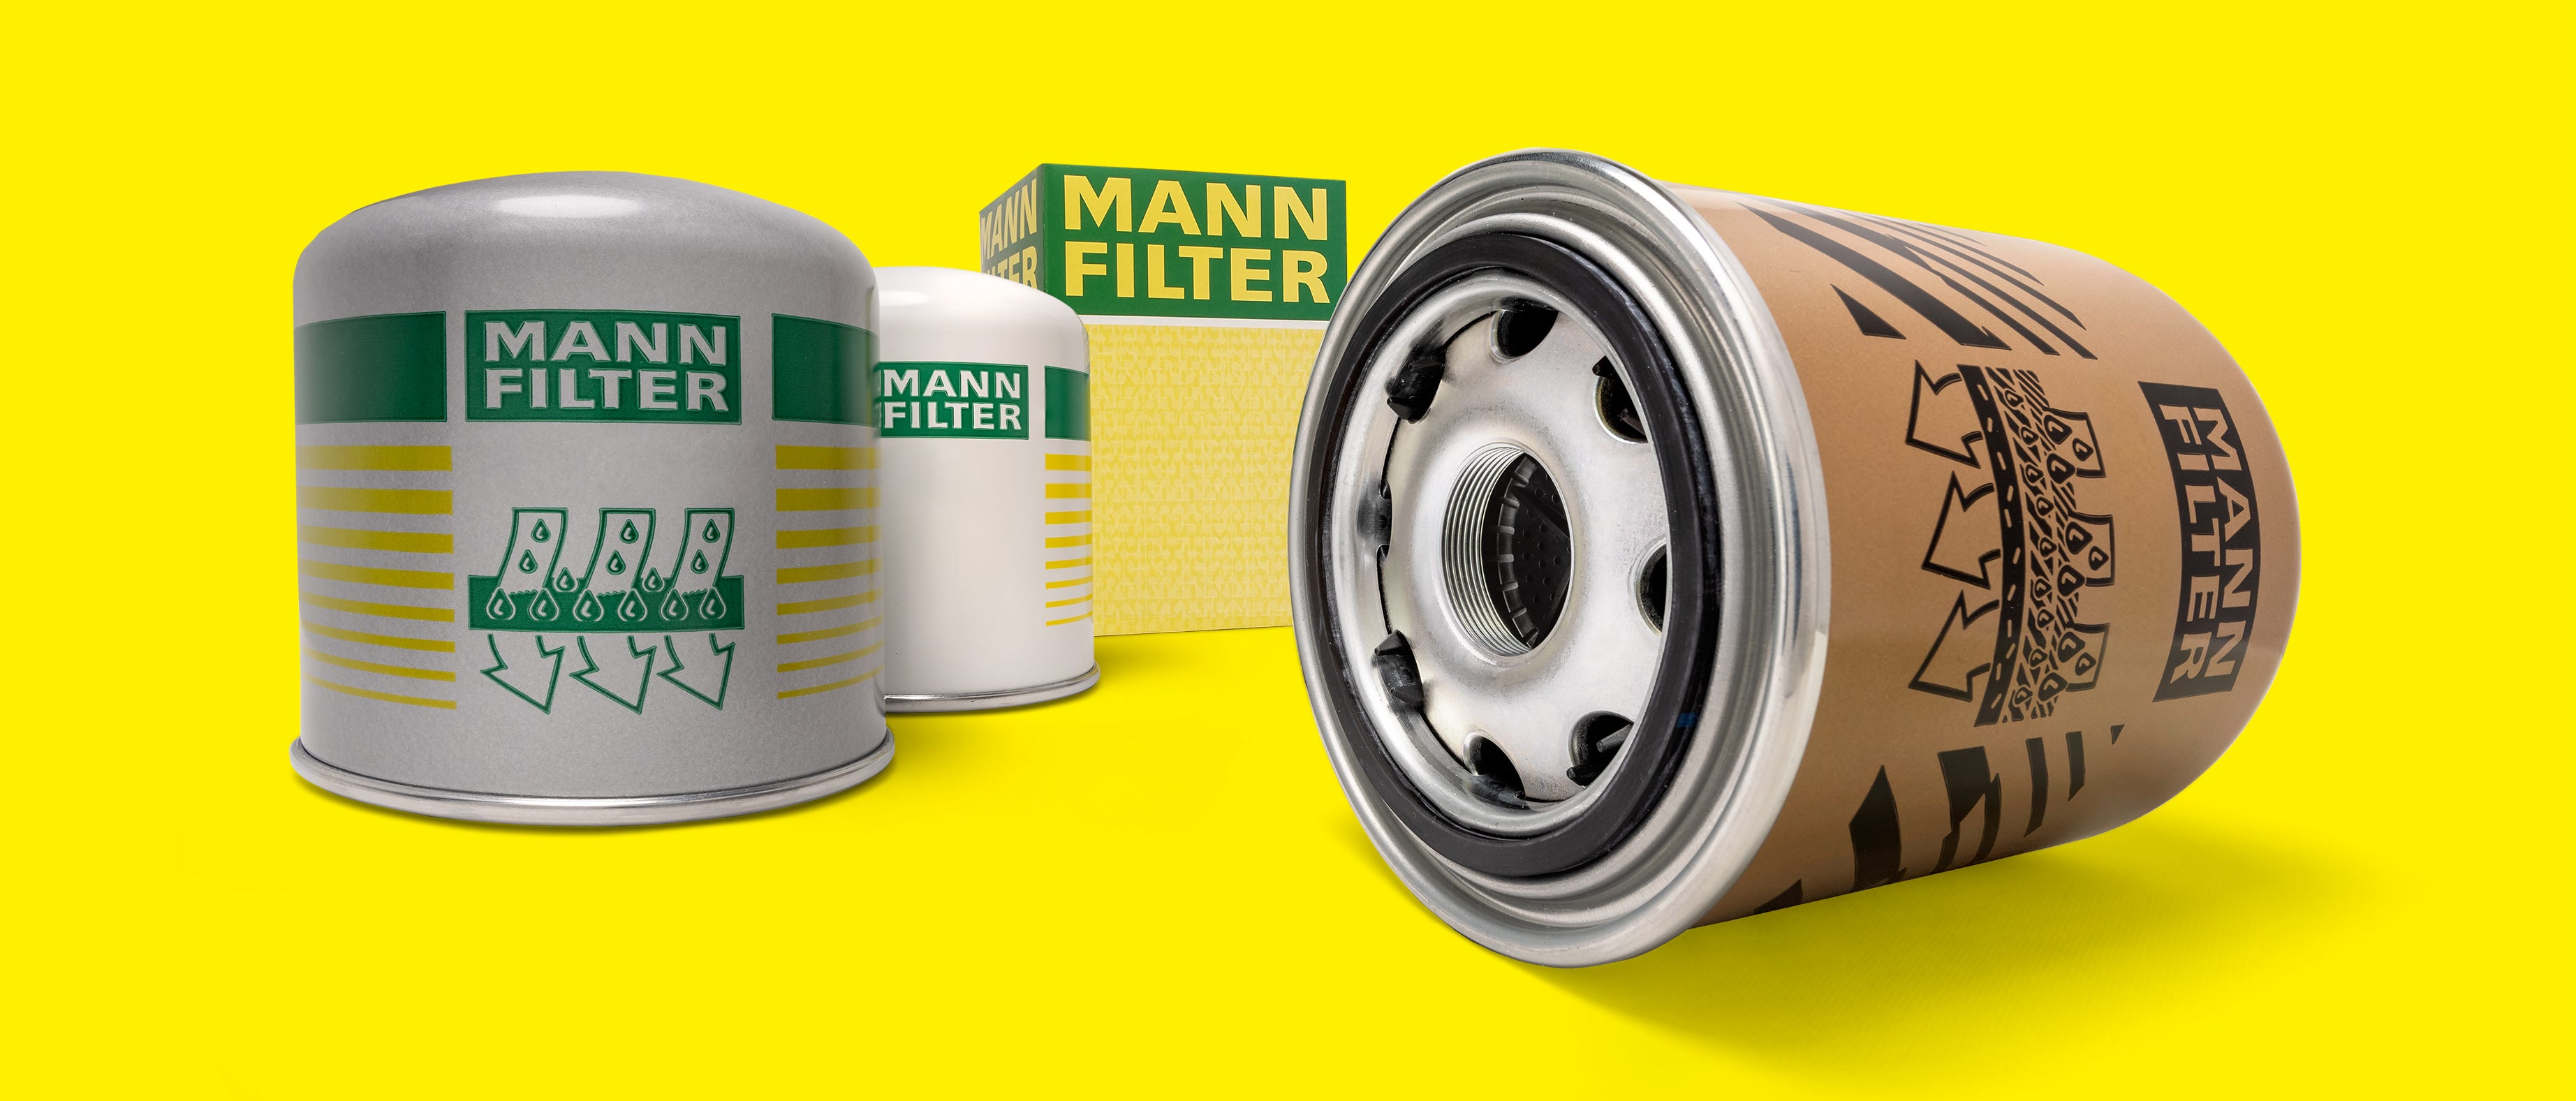 MANN-FILTER hava kurutucu kartuşları, ticari araçlarda pnömatik fren sistemlerinin korunması için kullanılır.